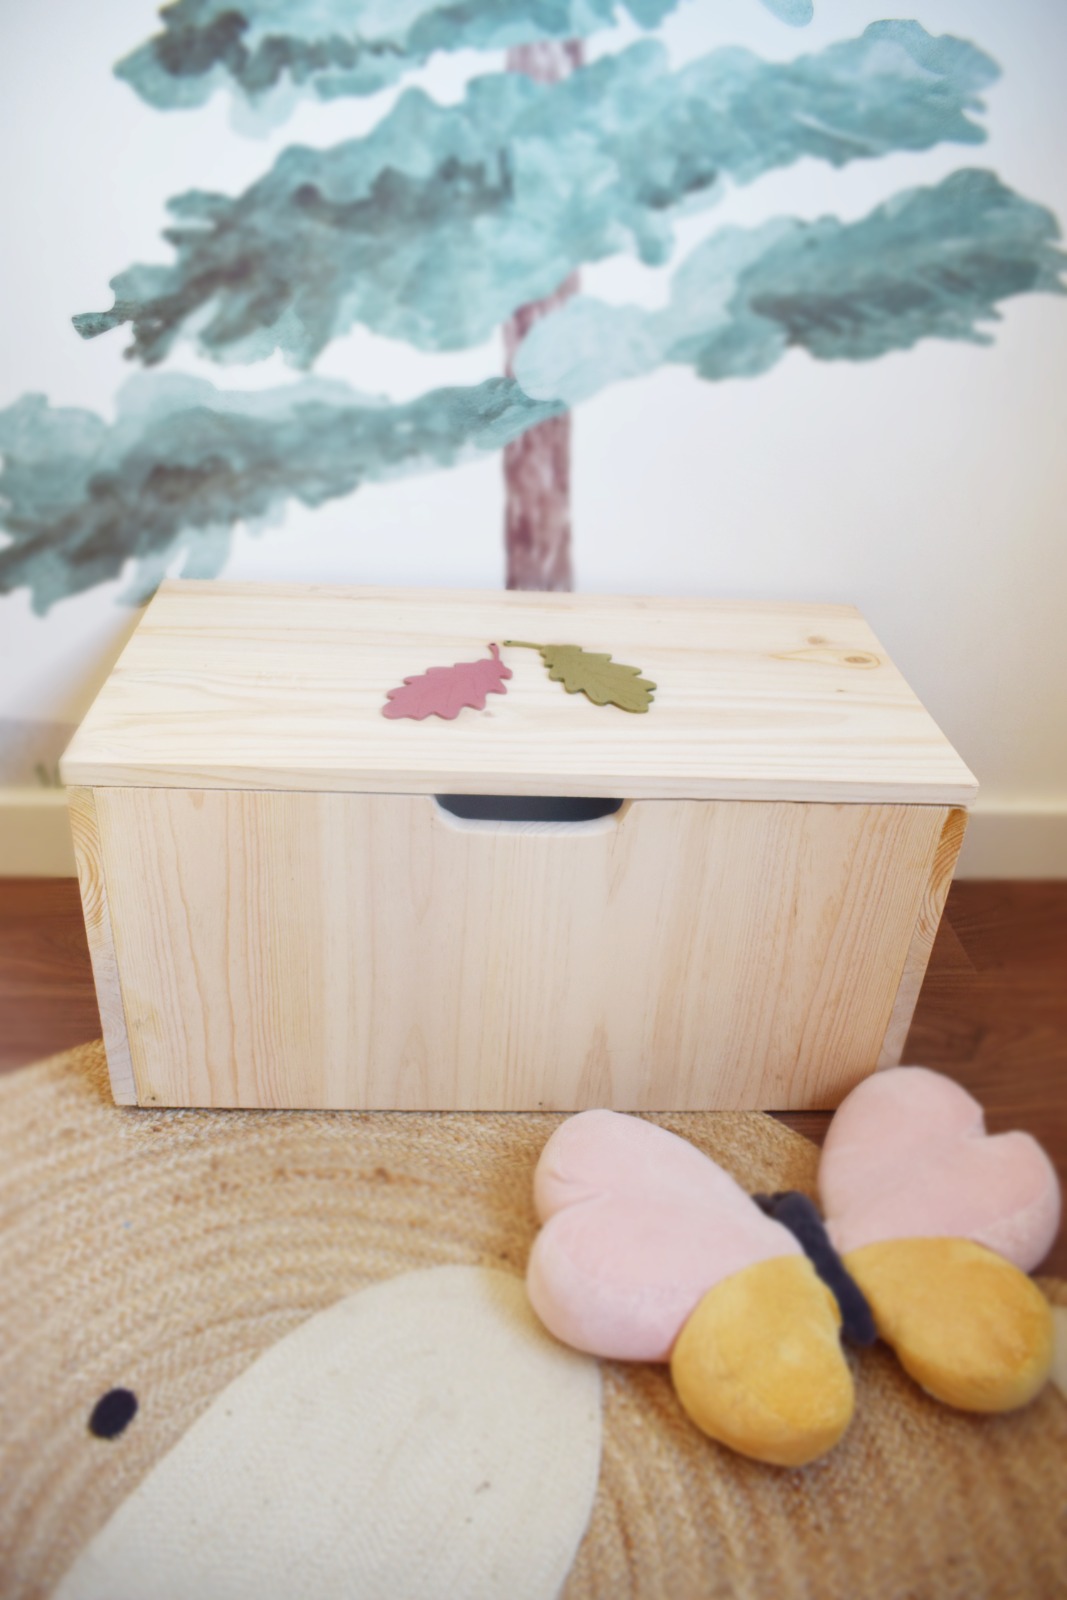 Baúl de madera con el detalle del corazón - Baúl Infantil - Baúl almacenaje  - Mobiliario Infantil - Decoración infantil - Juguetines